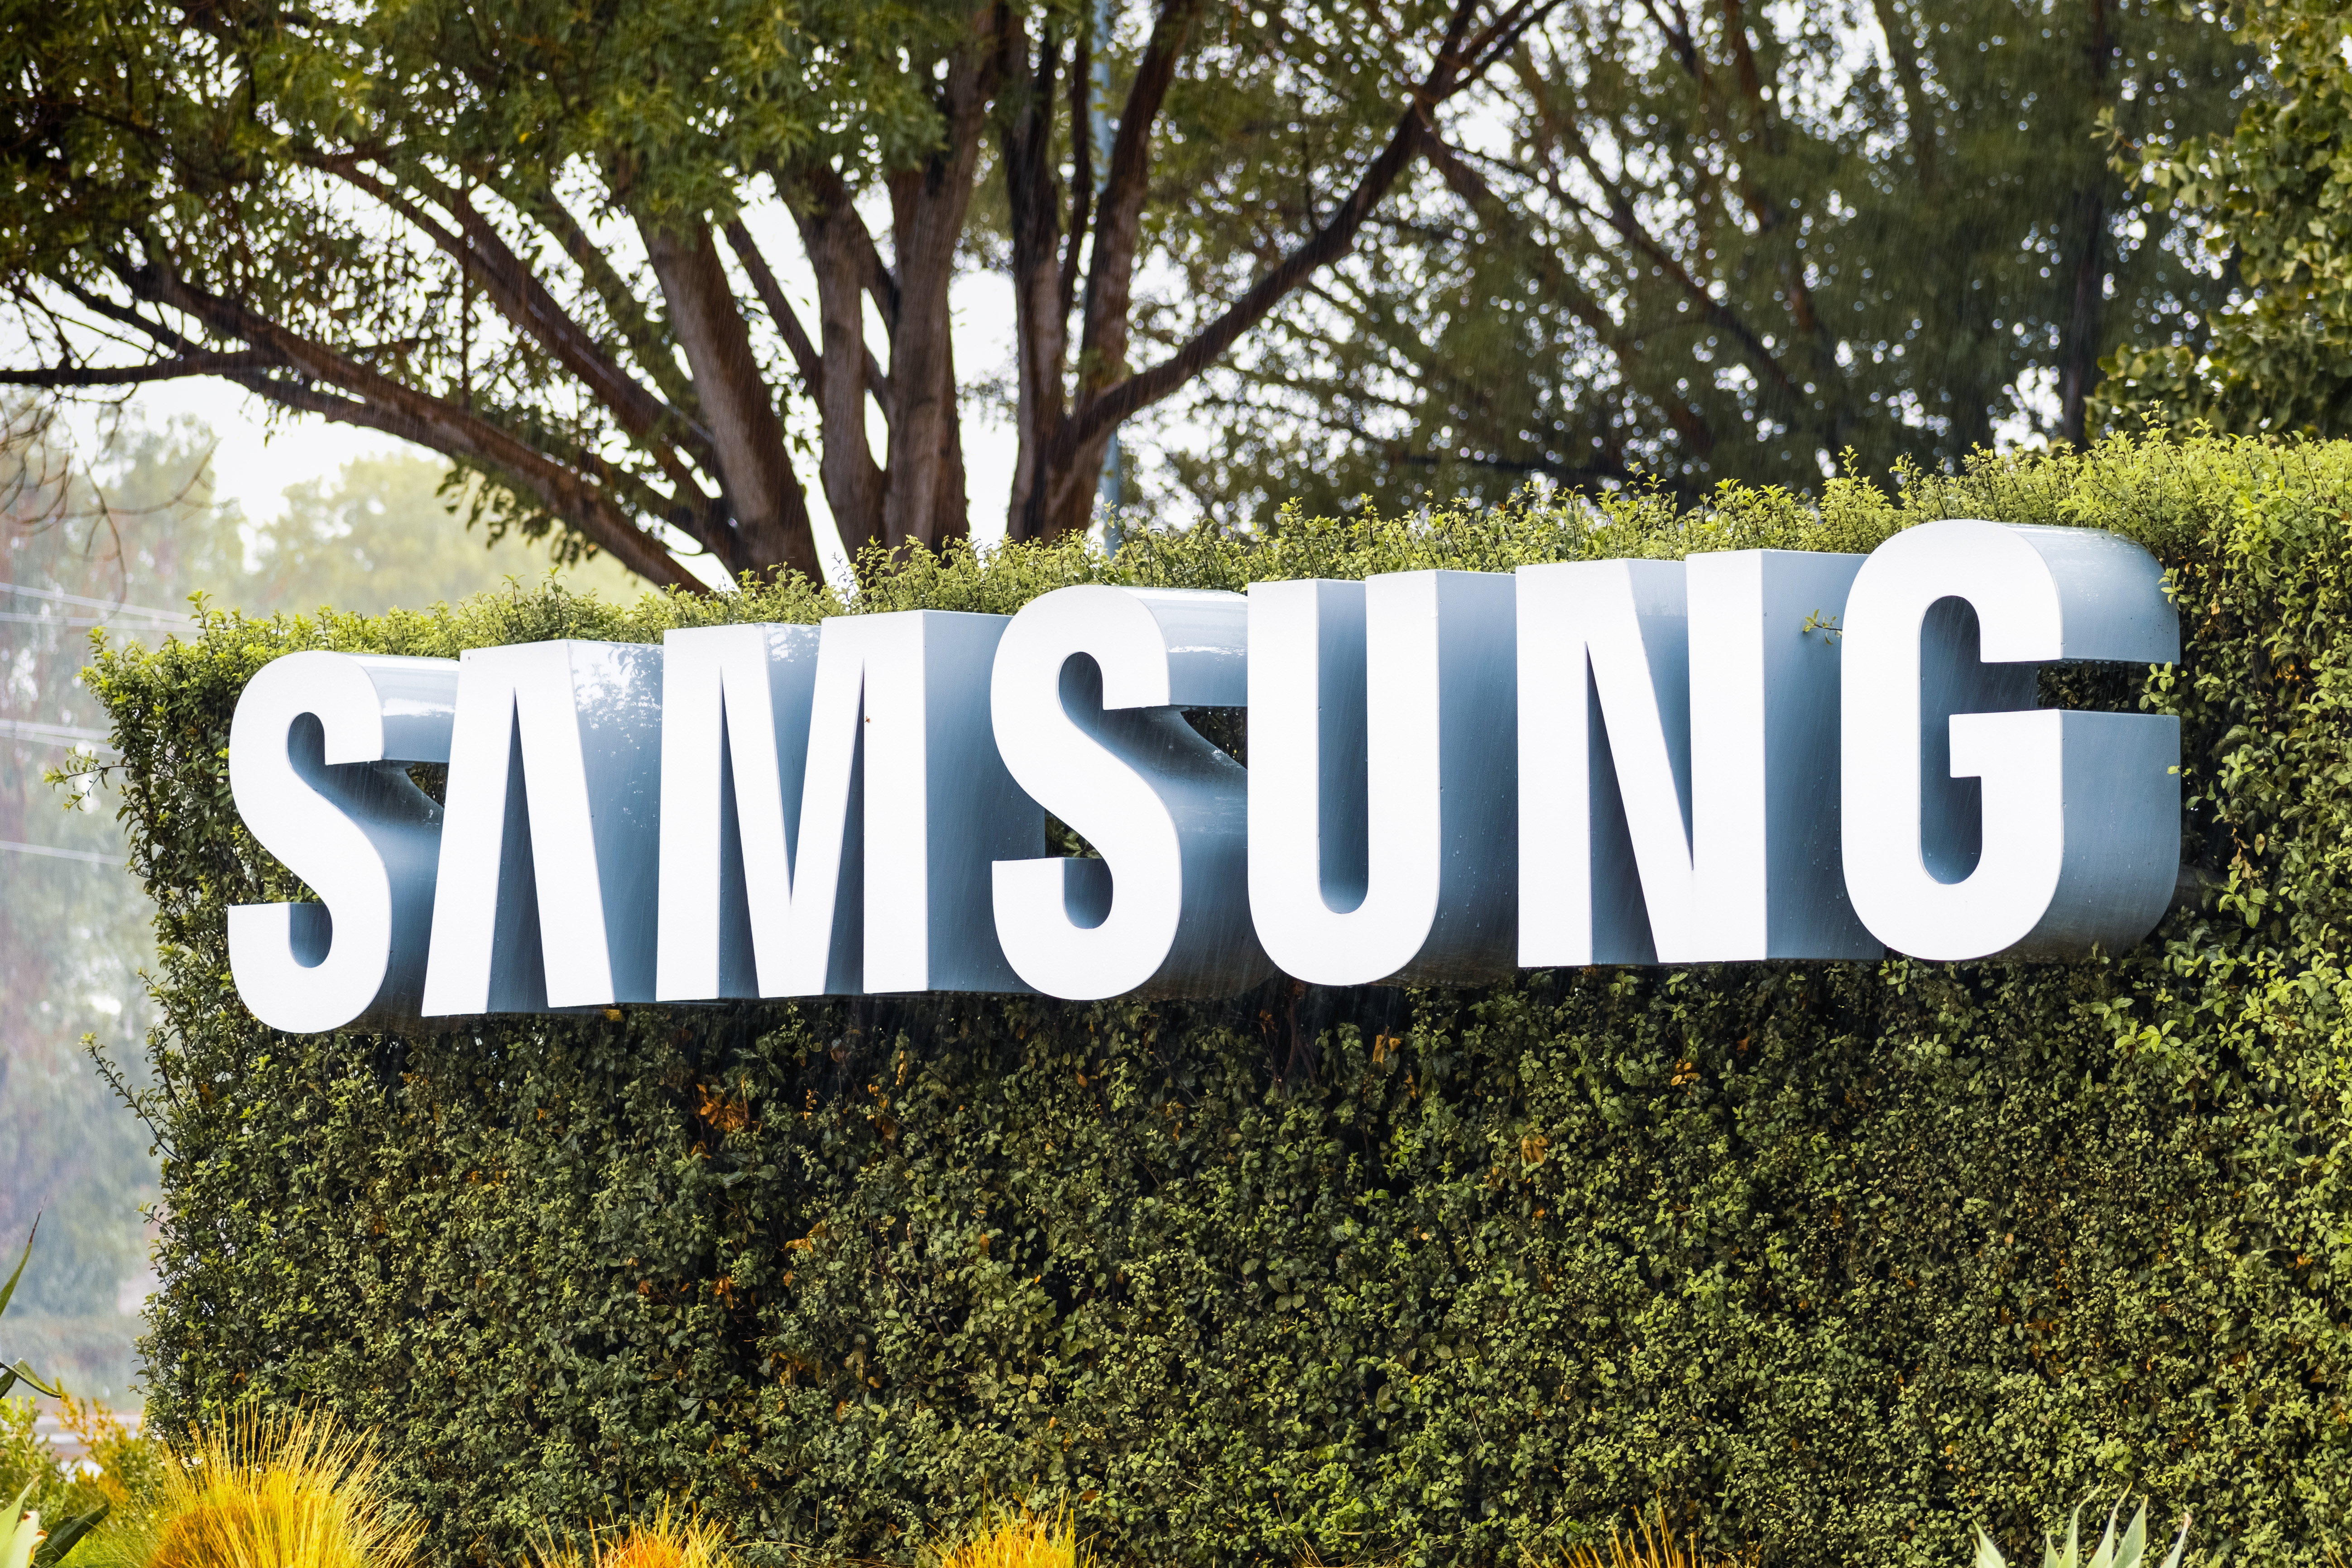 Toutes les meilleures offres Samsung sont à saisir maintenant lors de ventes flash Amazon © Sundry Photography, Adobe Stock